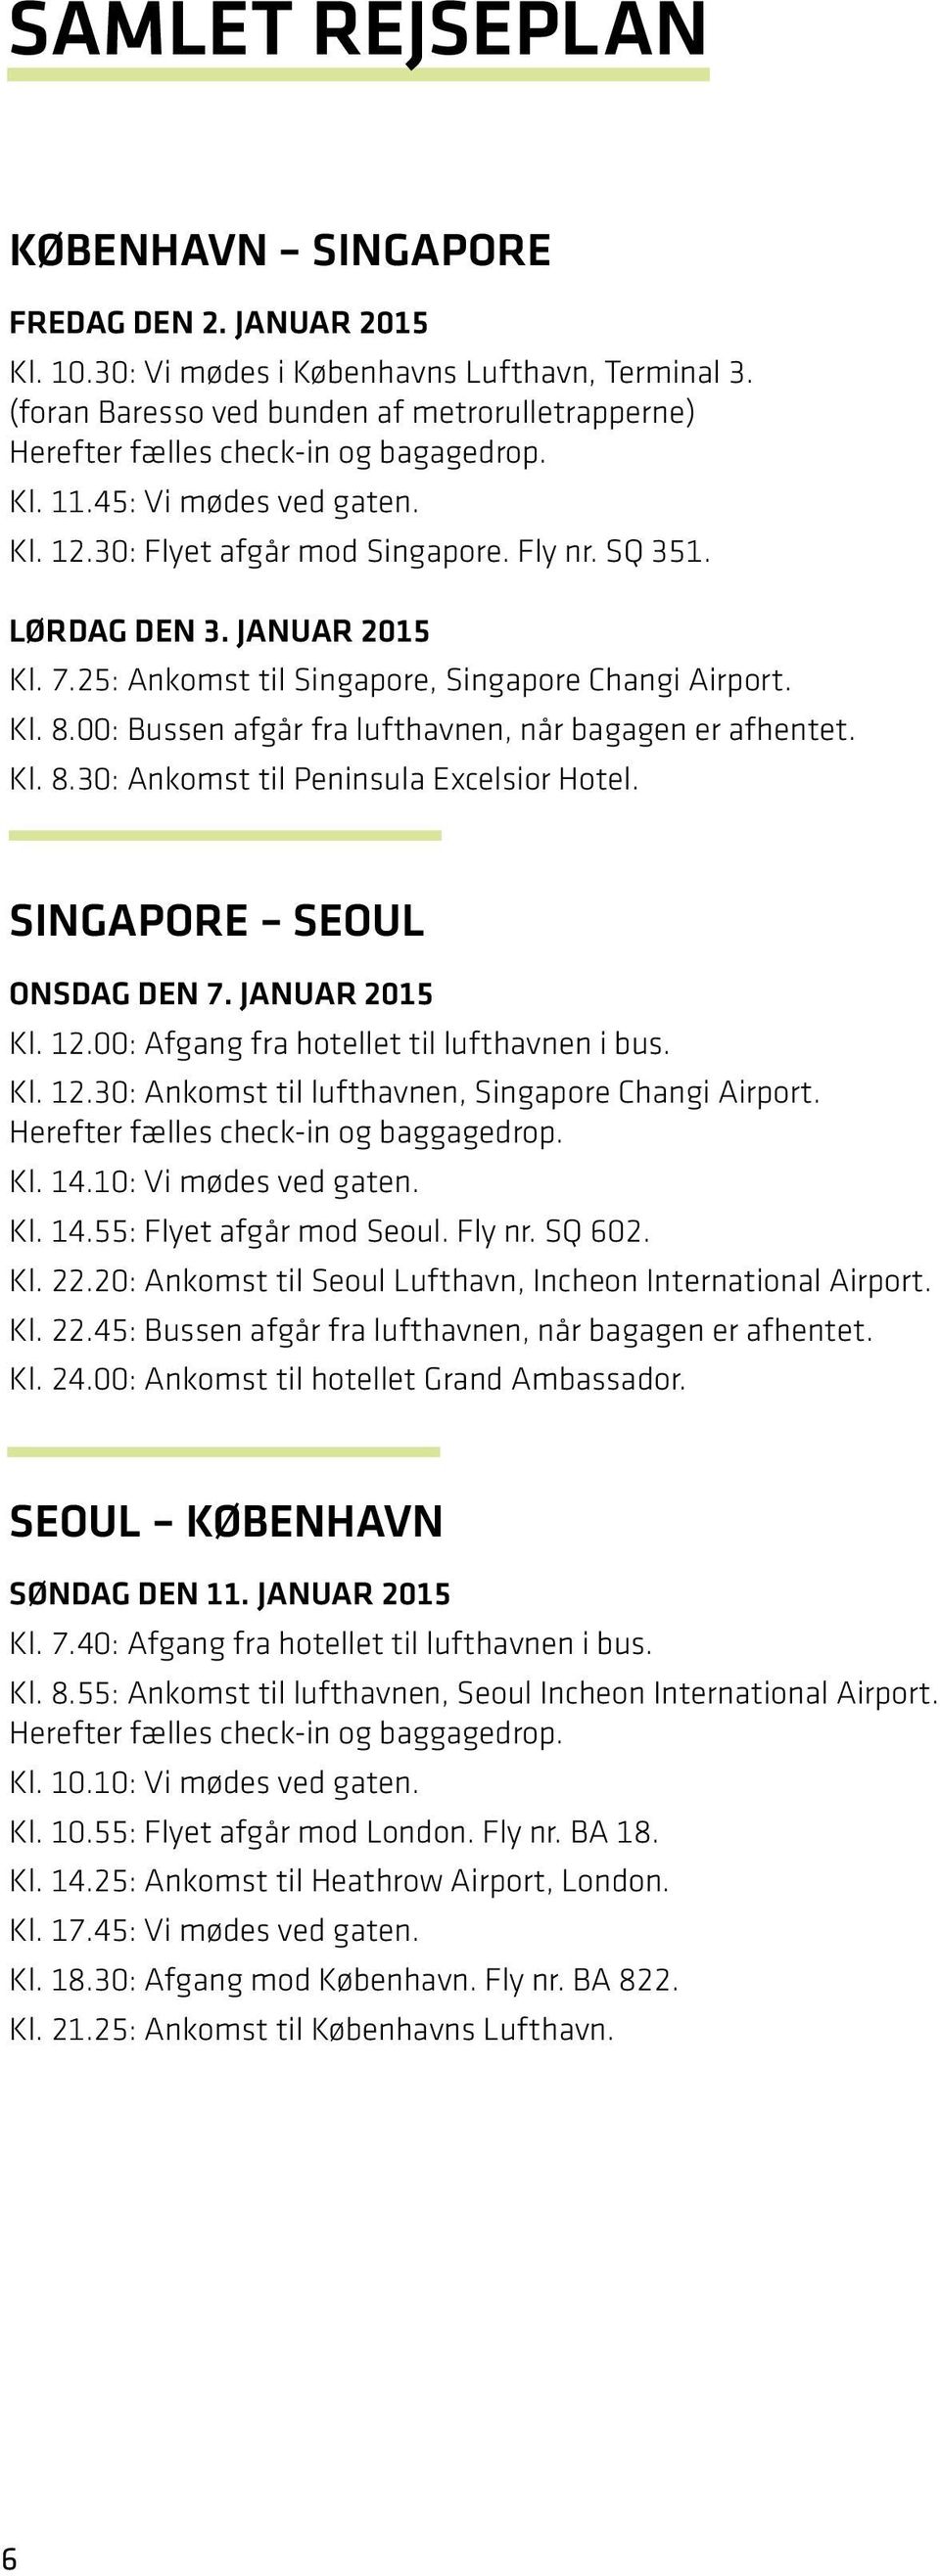 januar 2015 Kl. 7.25: Ankomst til Singapore, Singapore Changi Airport. Kl. 8.00: Bussen afgår fra lufthavnen, når bagagen er afhentet. Kl. 8.30: Ankomst til Peninsula Excelsior Hotel.